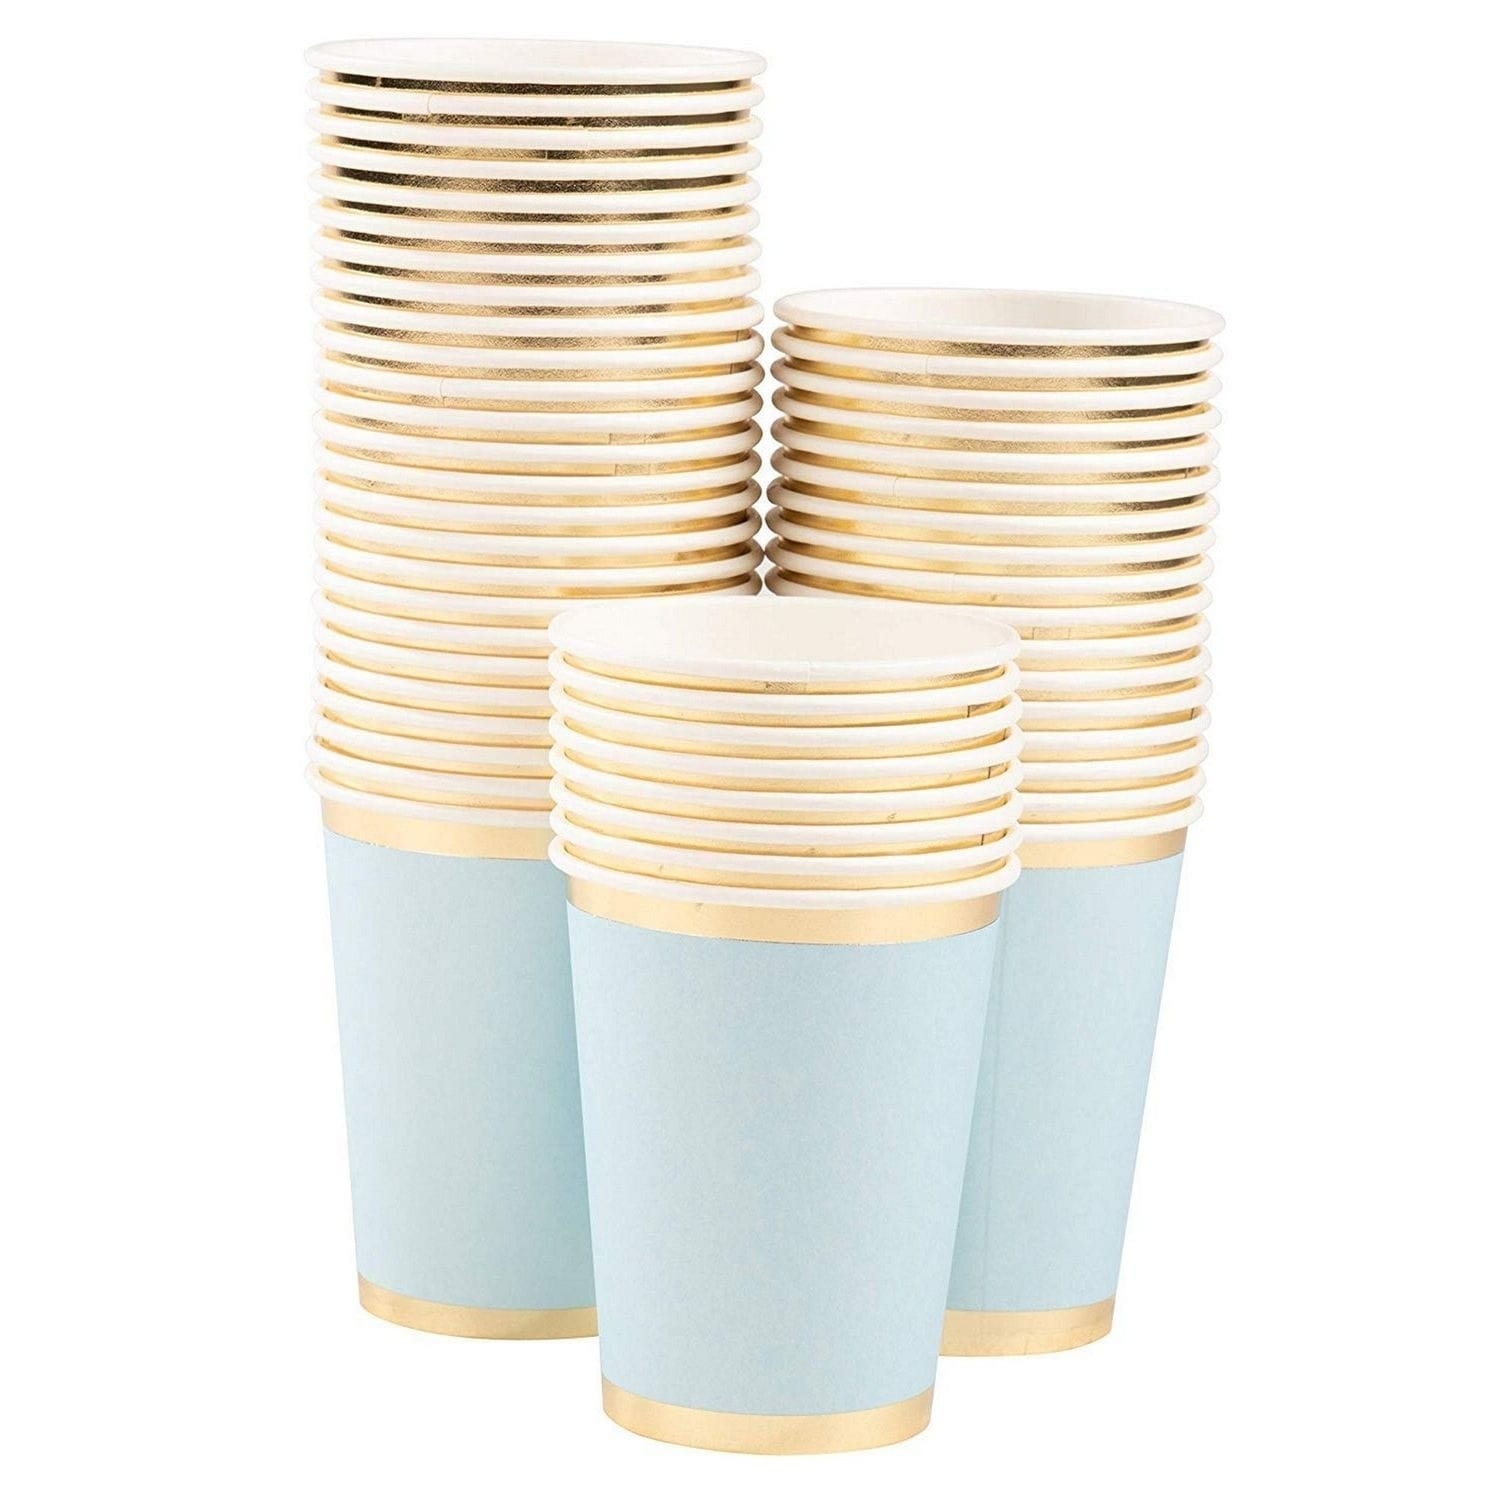  Exquisite Light Blue Paper Cups - 9 oz Disposable